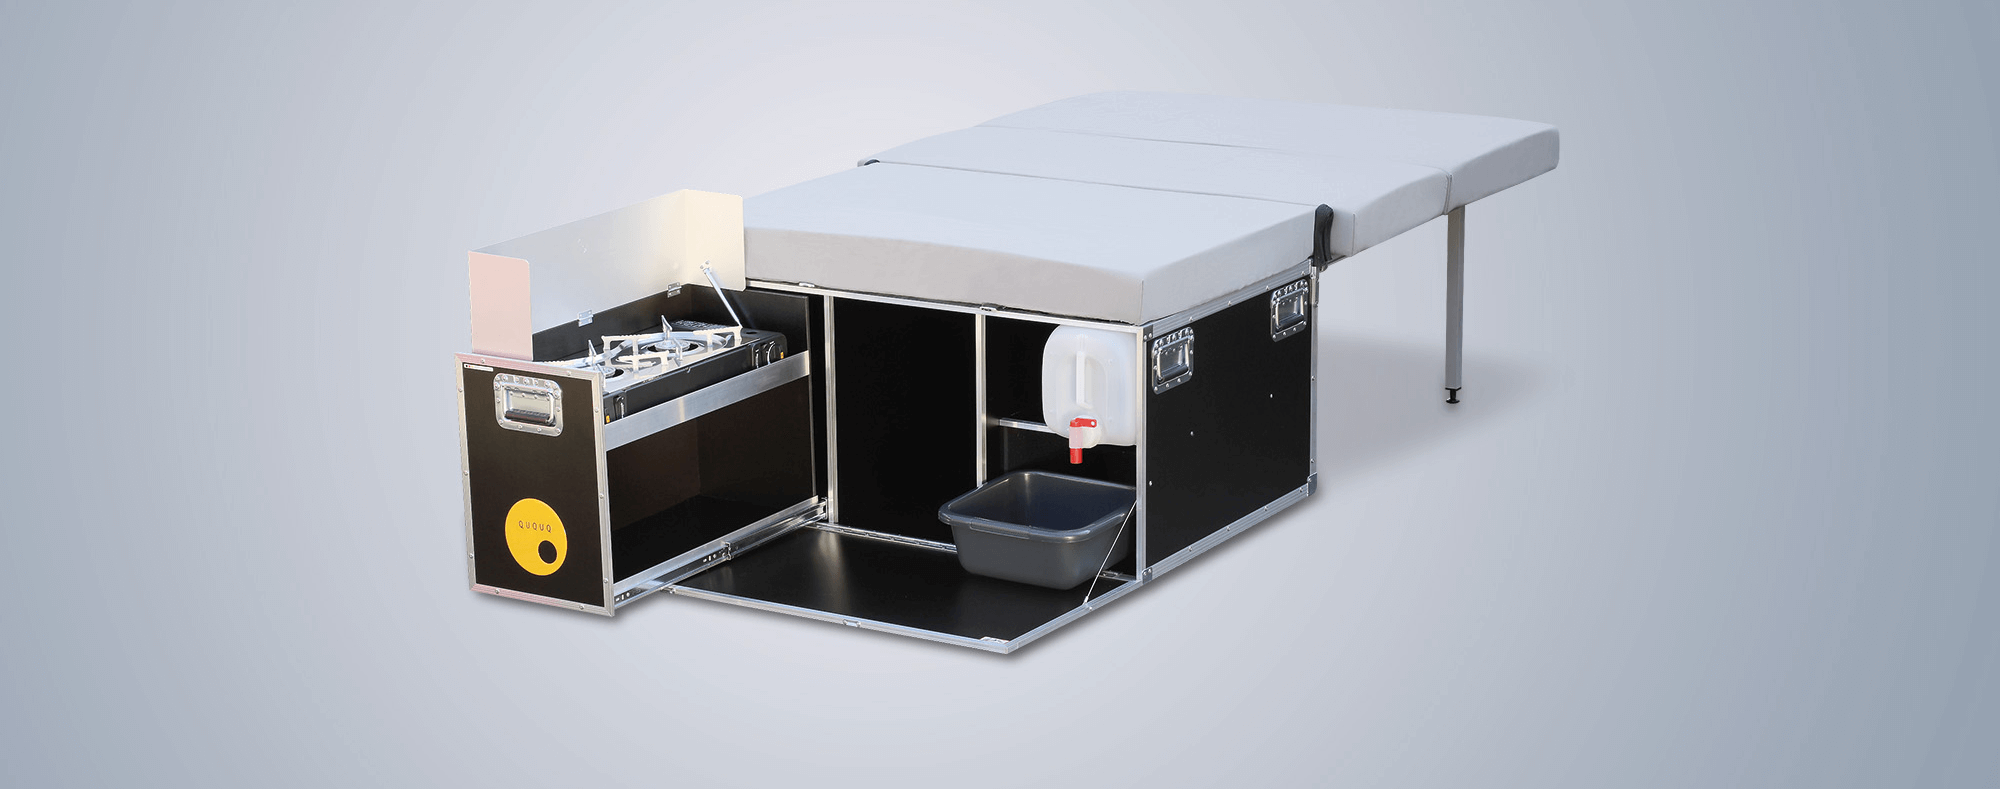 QUQUQ®5 Camping-Box mit Kocher